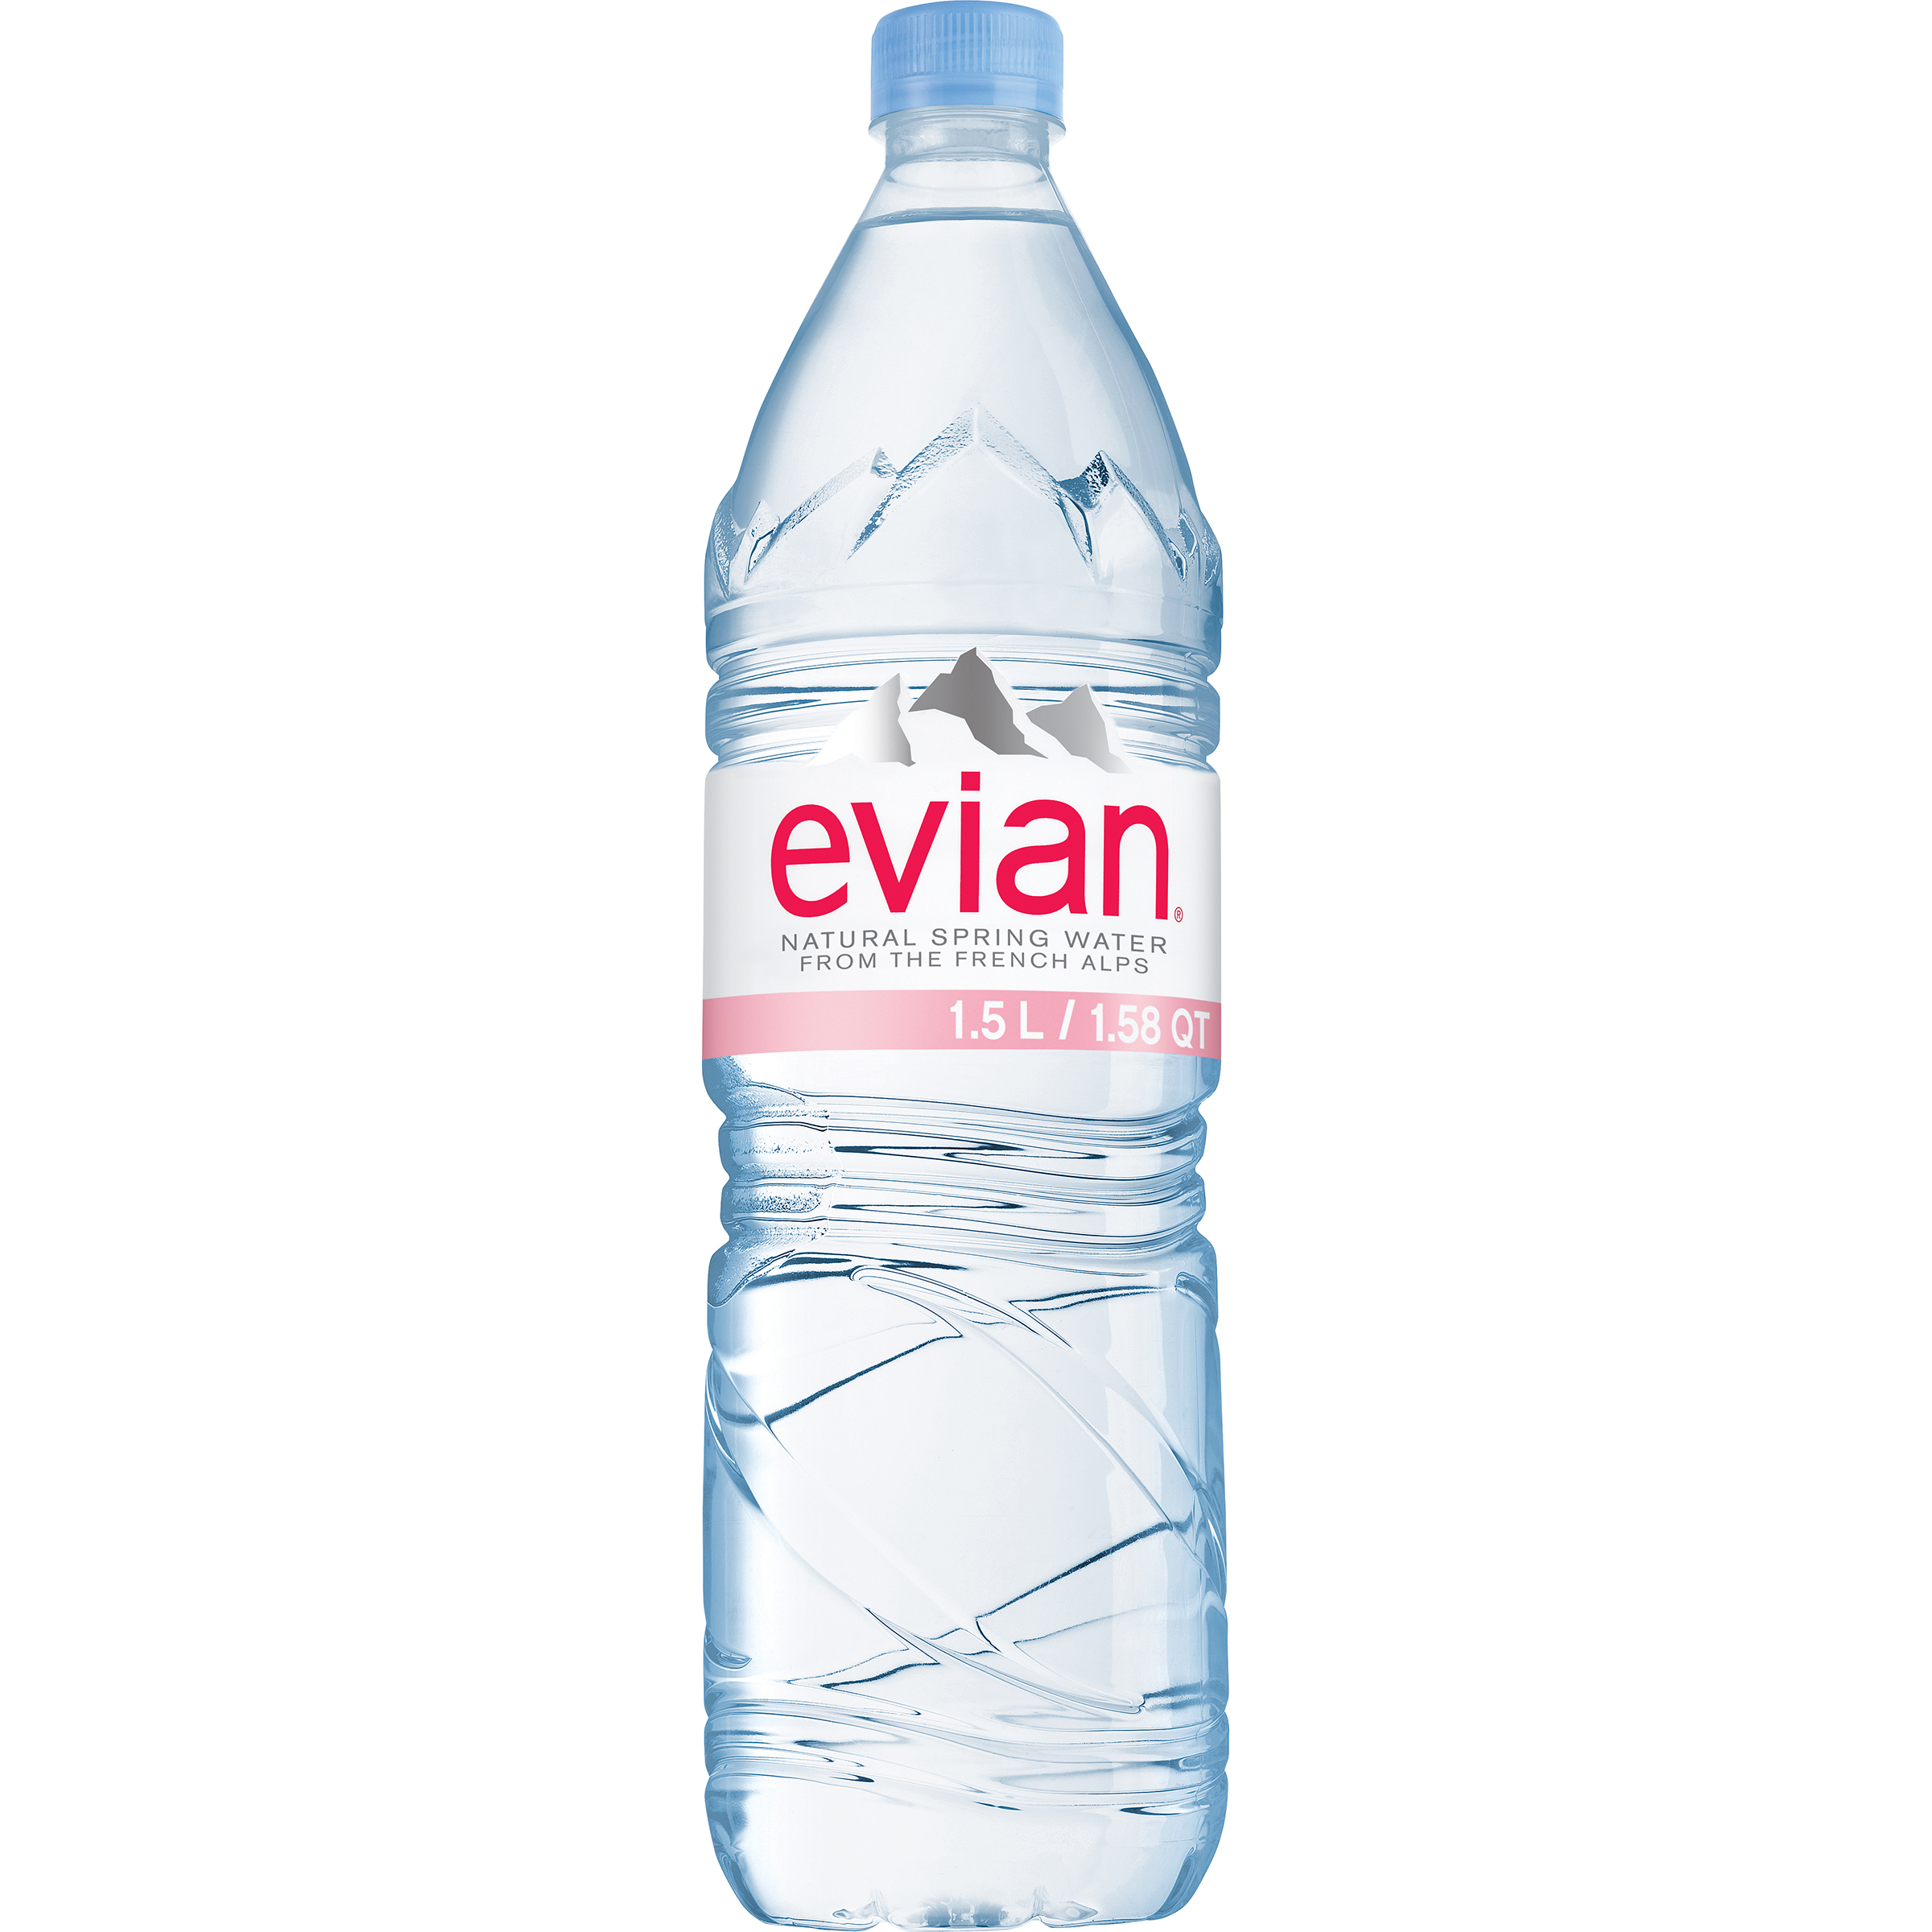 Evian Natural Spring Water, 1.5 lt (1.58 qt)